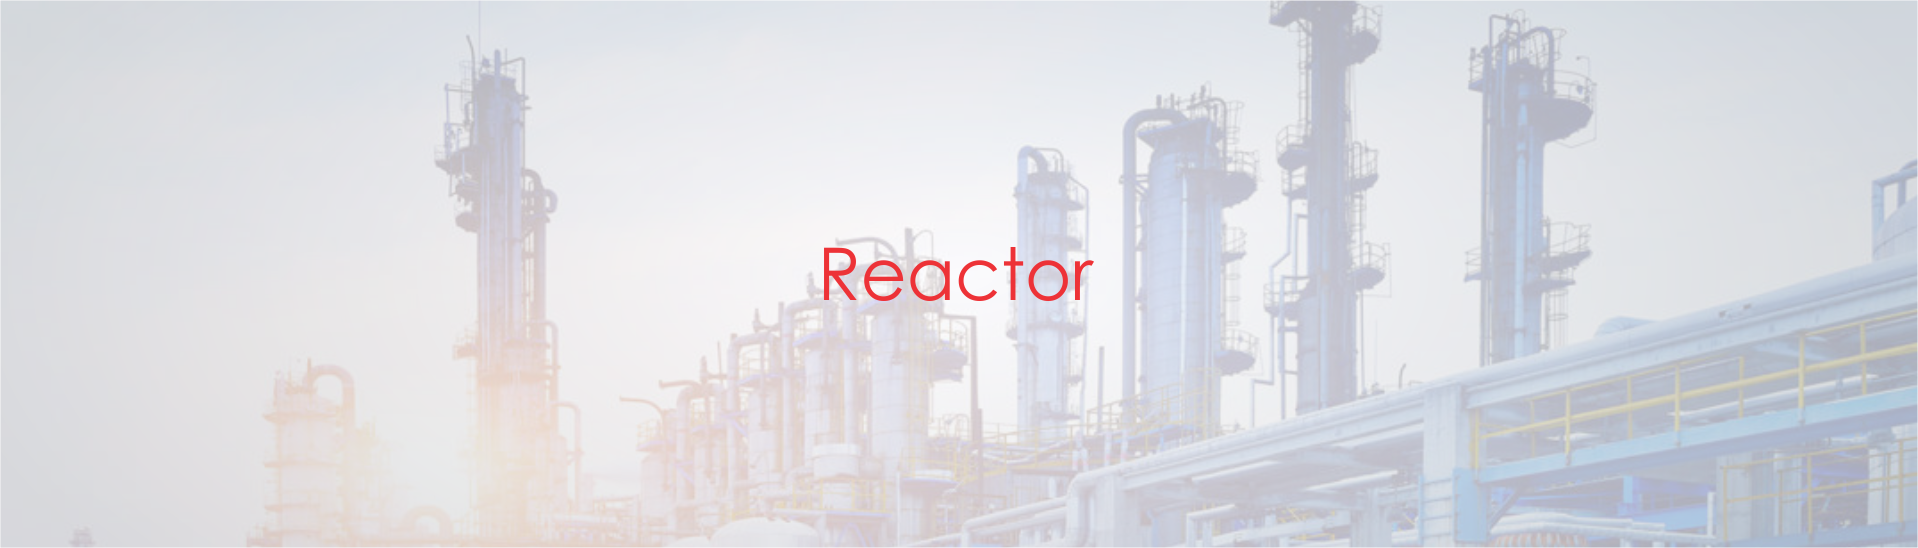 Industrial Reactors